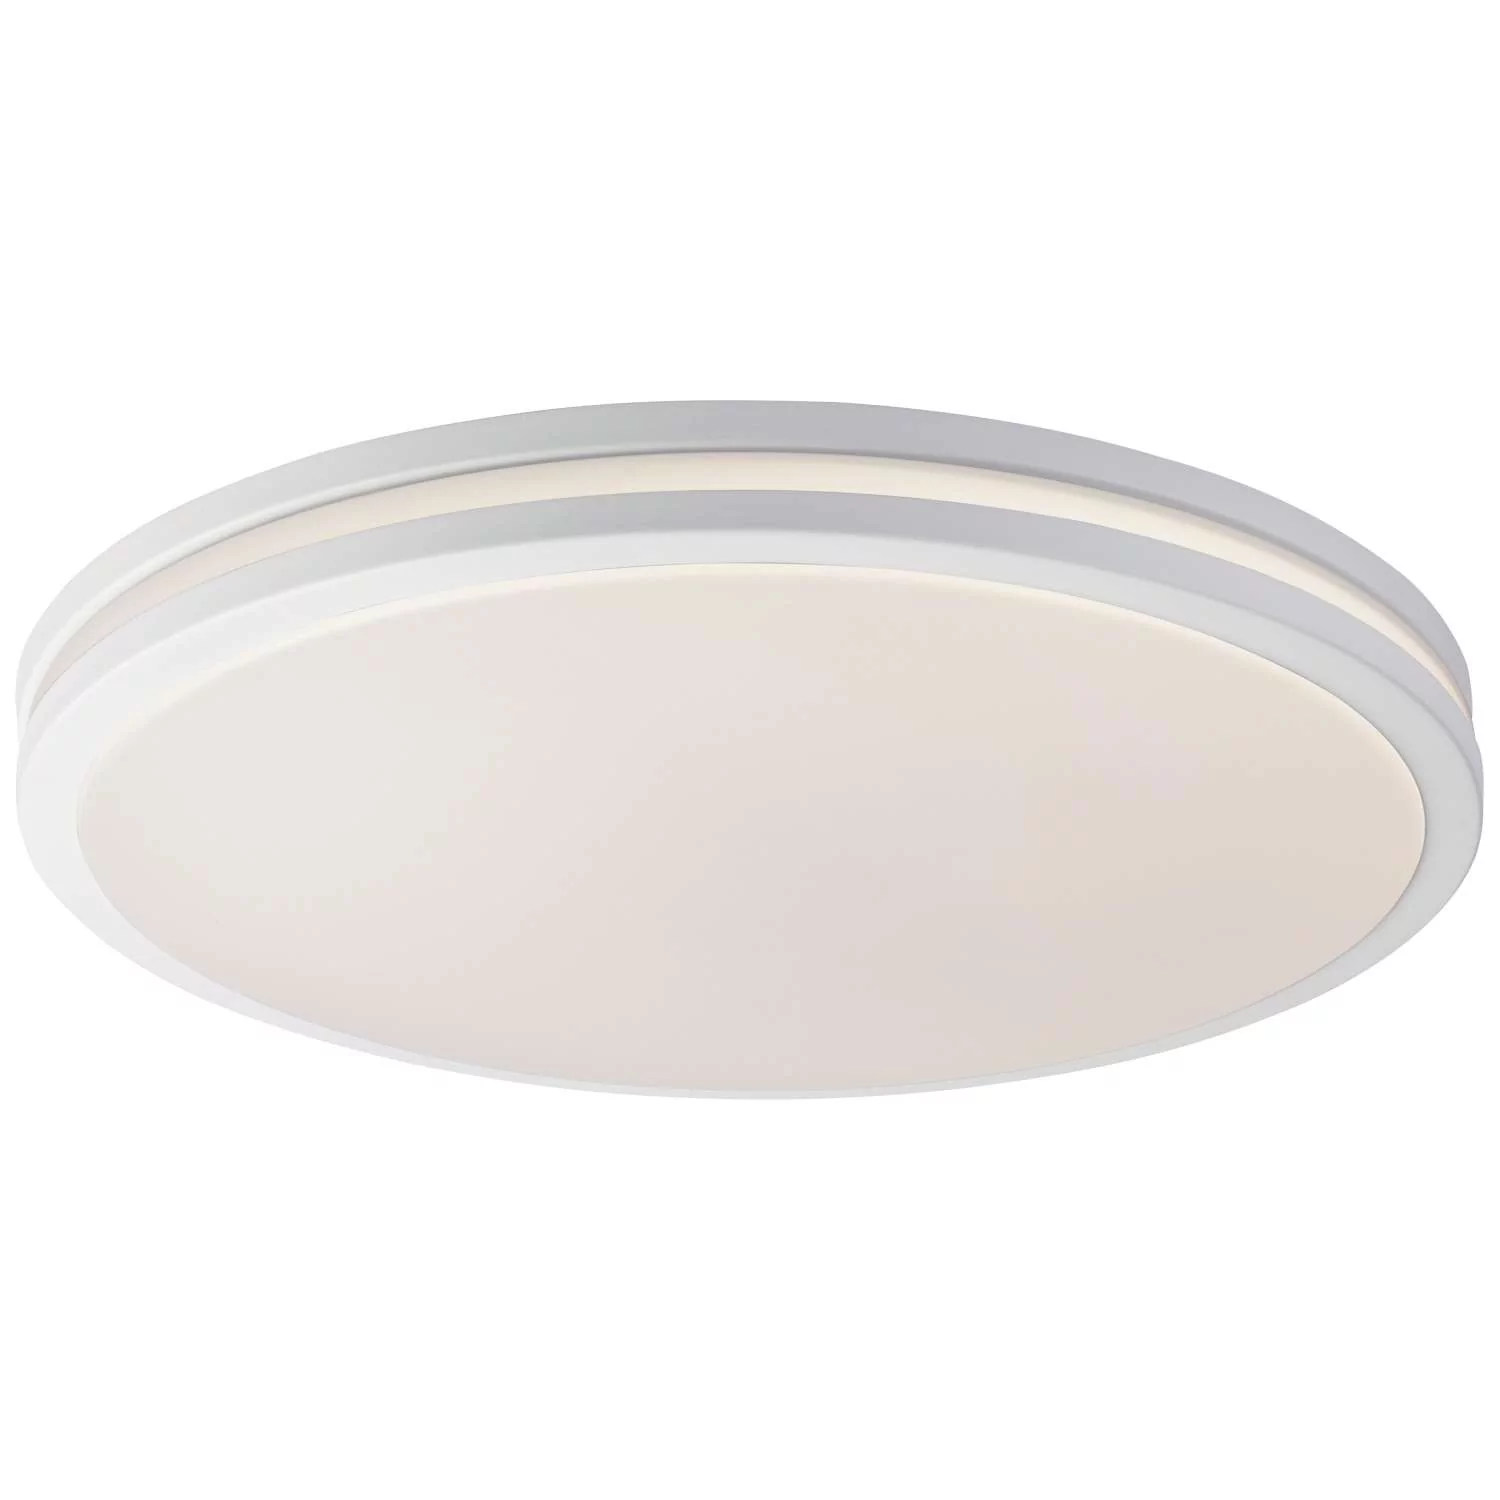 Globo Lighting FLAT Lampa Sufitowa LED Biały 1-punktowy Nowoczesny Obszar wewnętrzny FLAT 41607-36